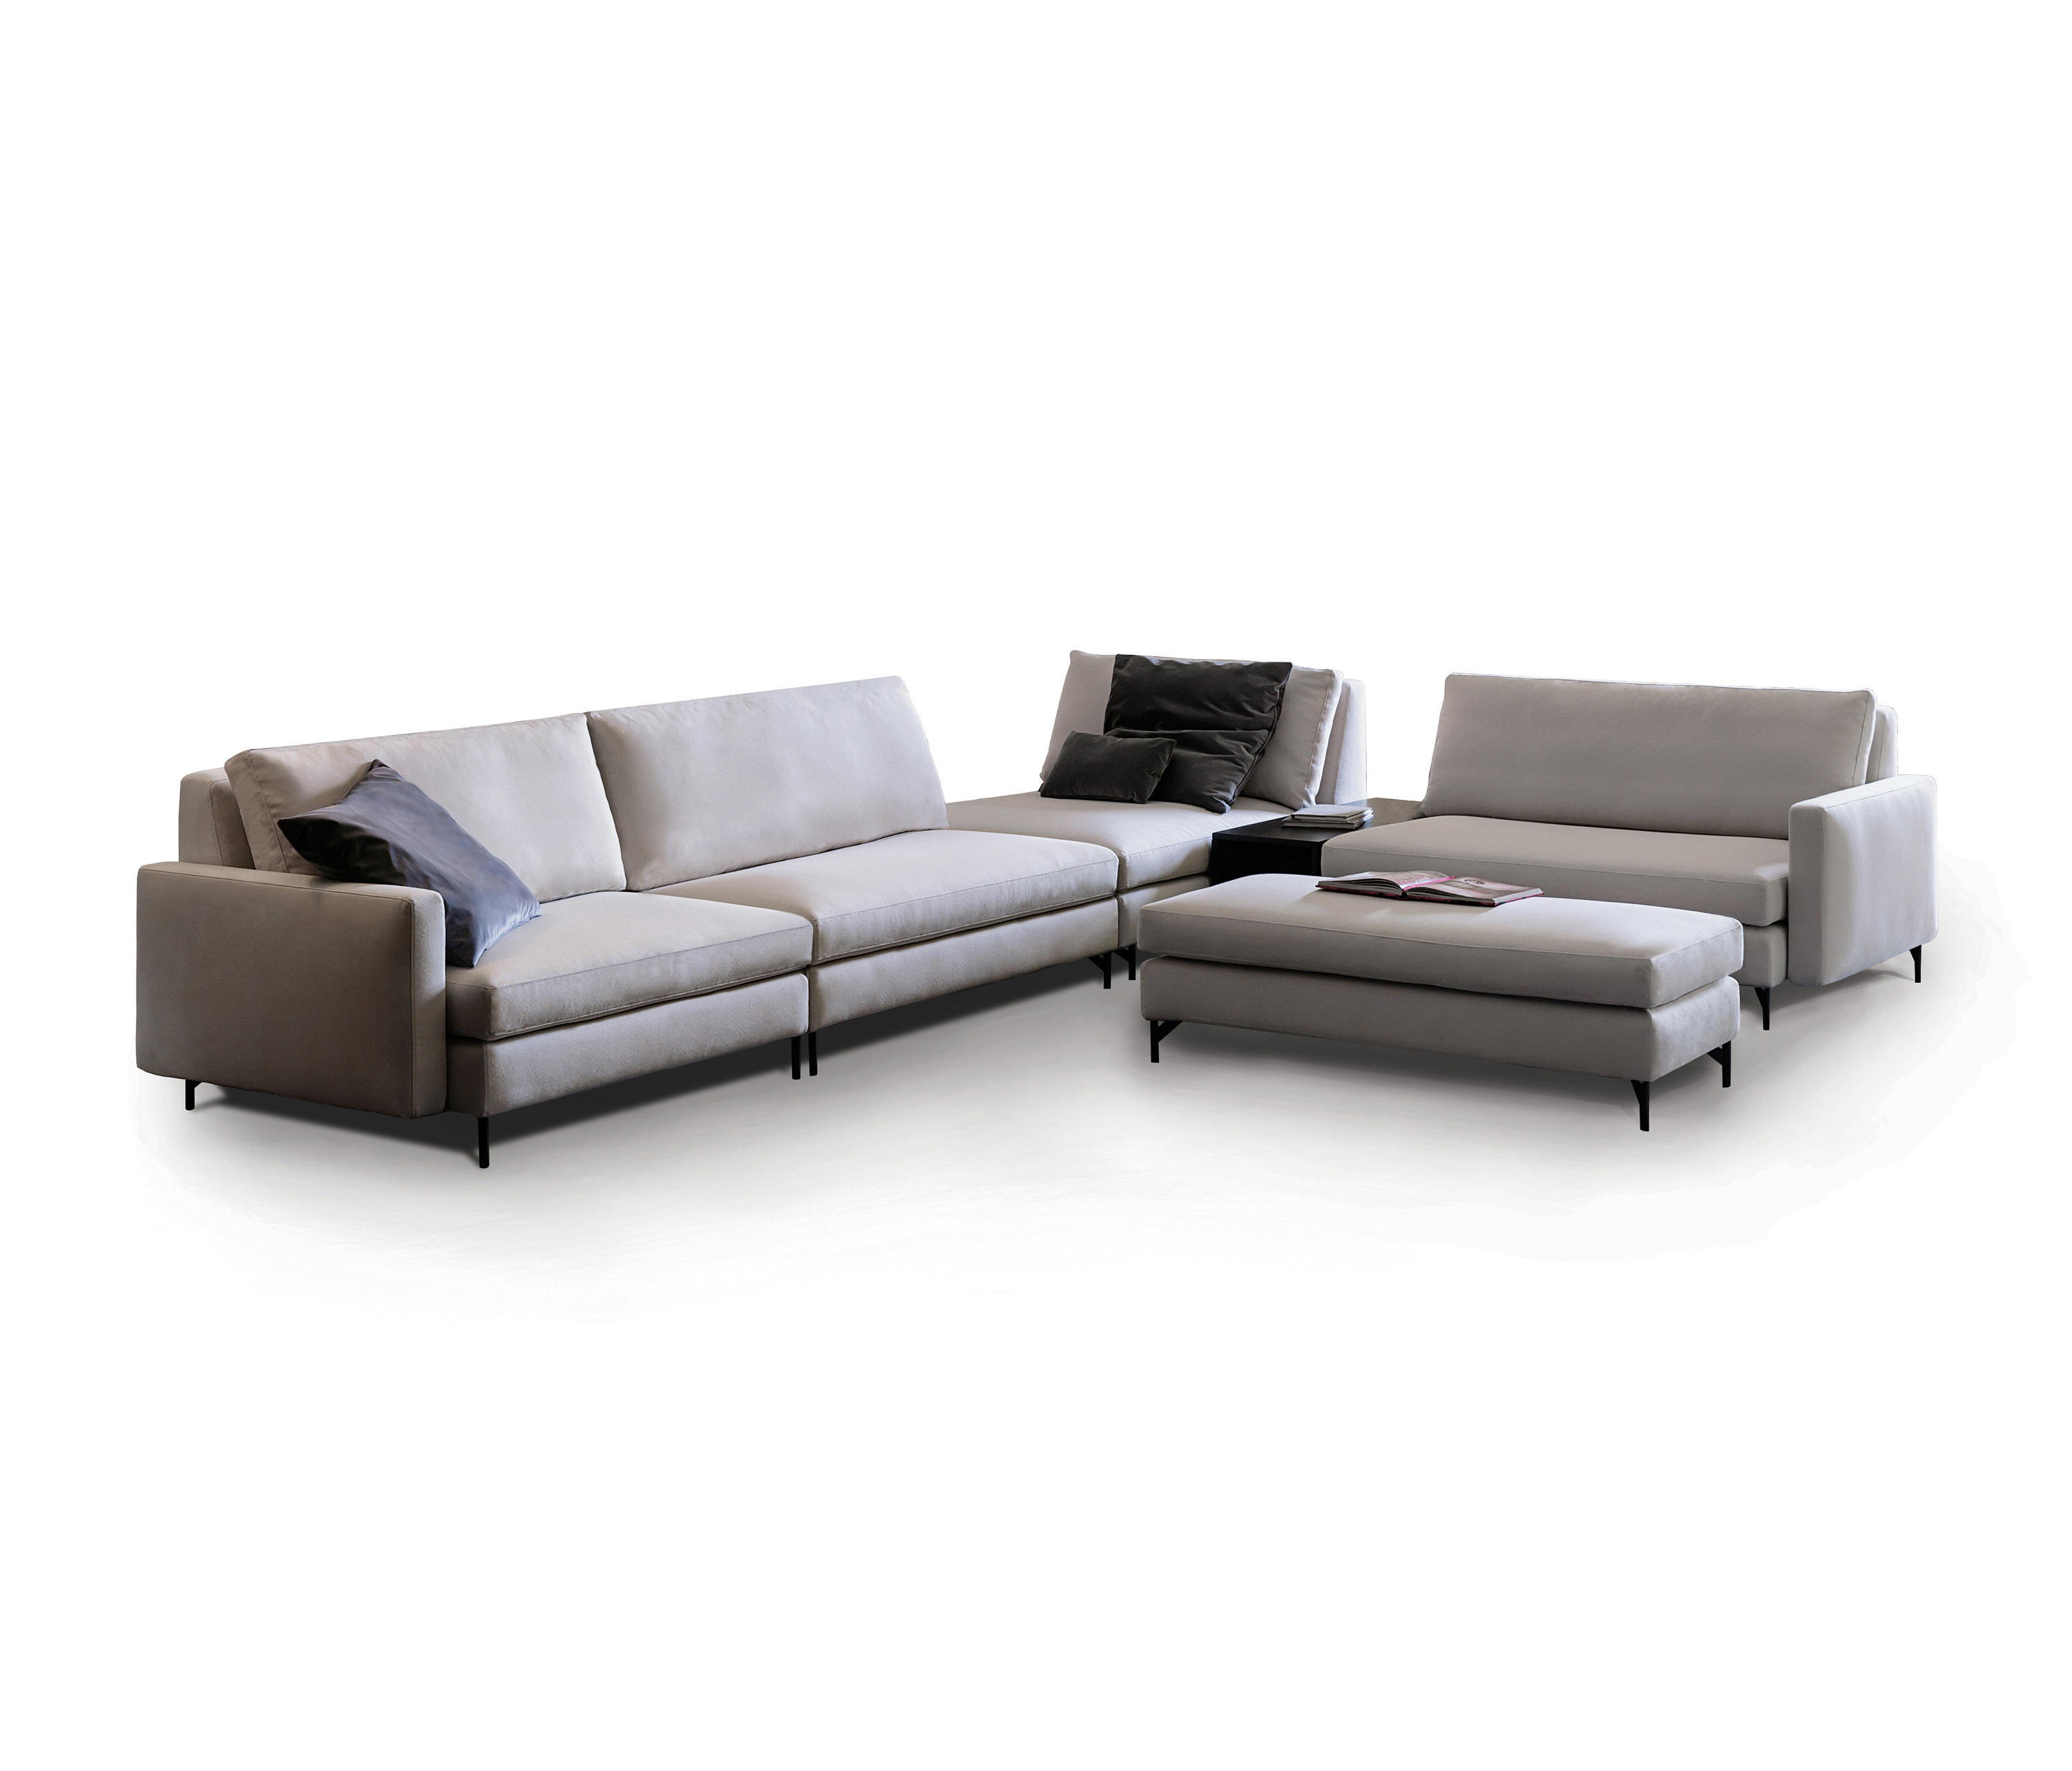 525 Nordic Sofa Designer Furniture Architonic